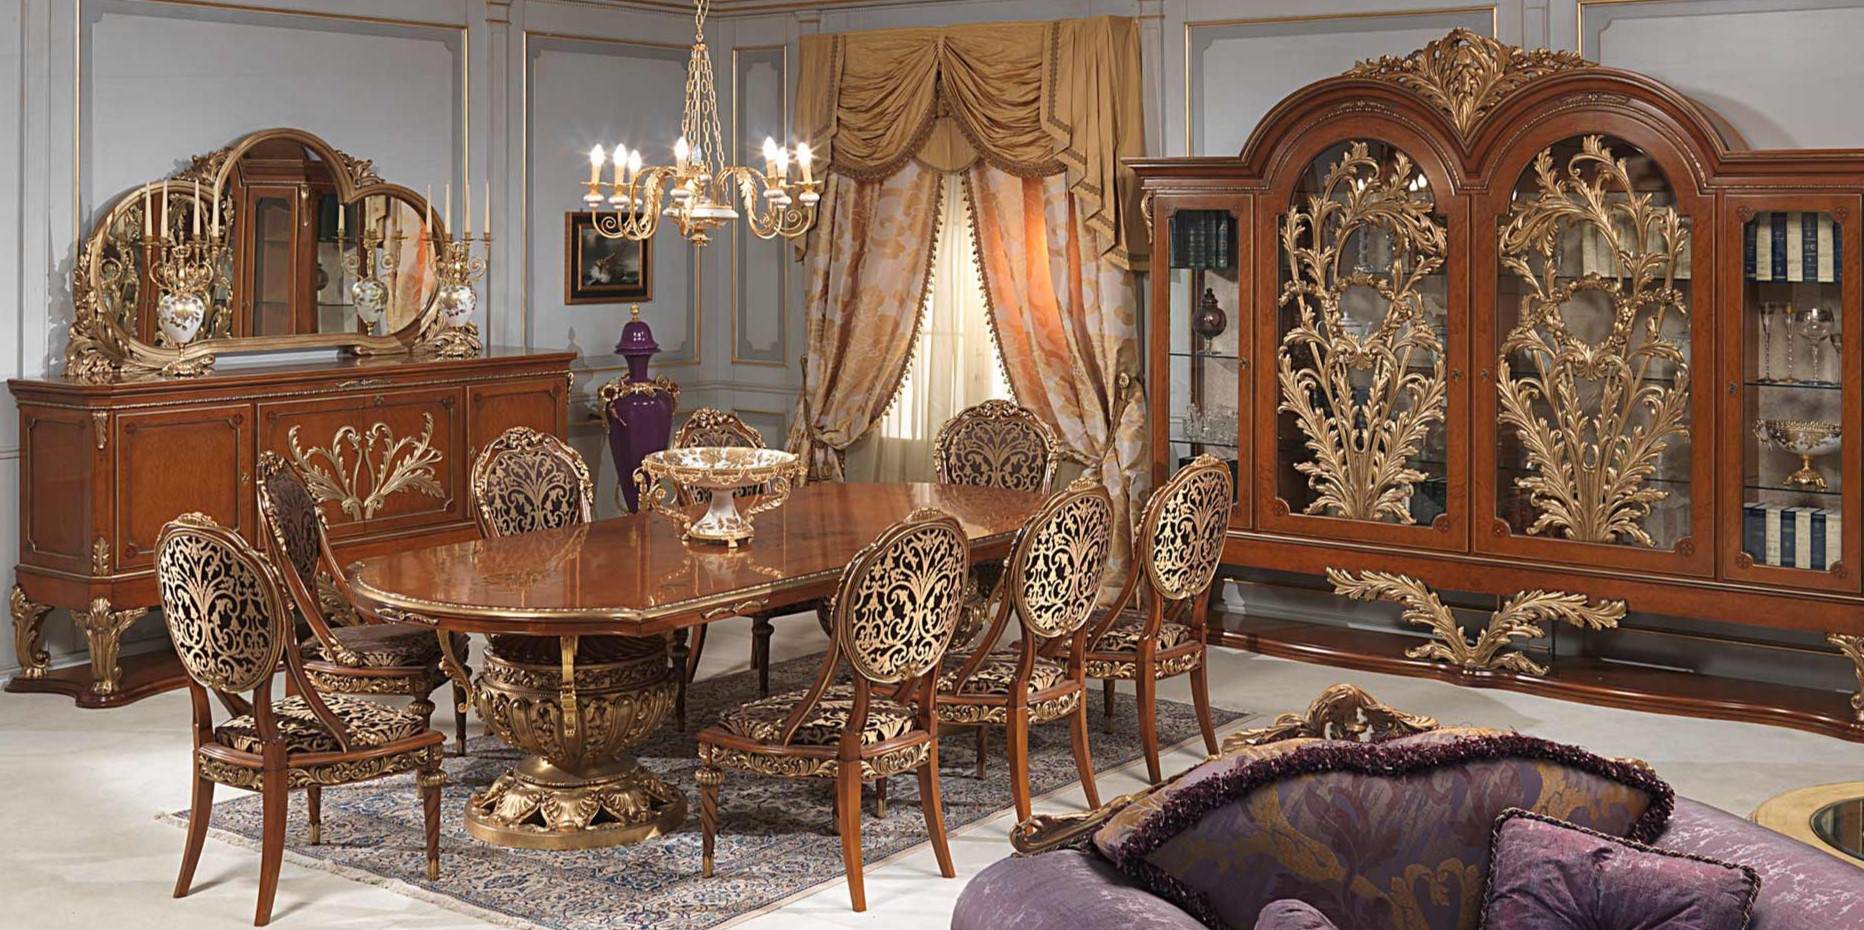 Стулья с роскошным золотым орнаментом идеально сочетаются с мебелью и декором в интерьере